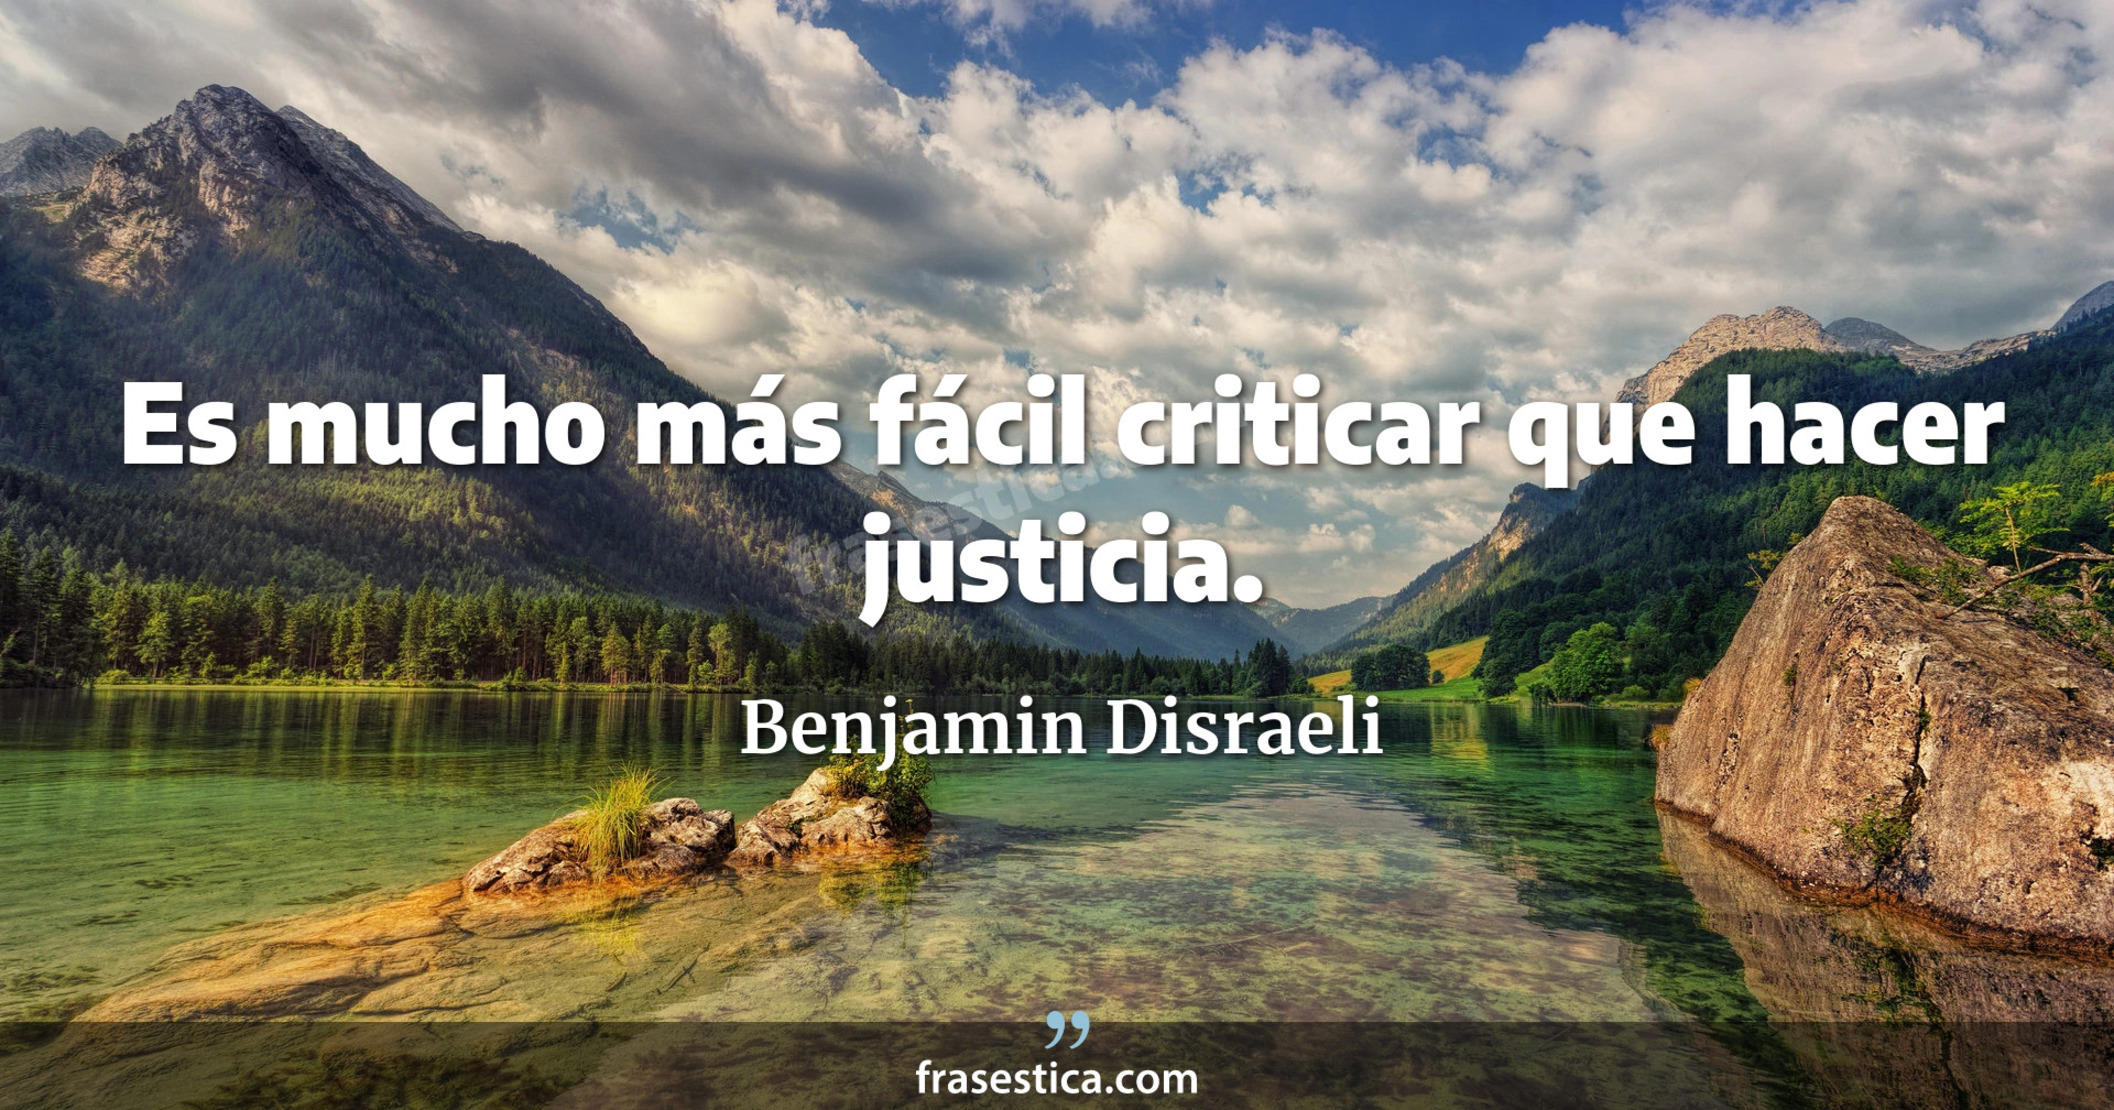 Es mucho más fácil criticar que hacer justicia. - Benjamin Disraeli